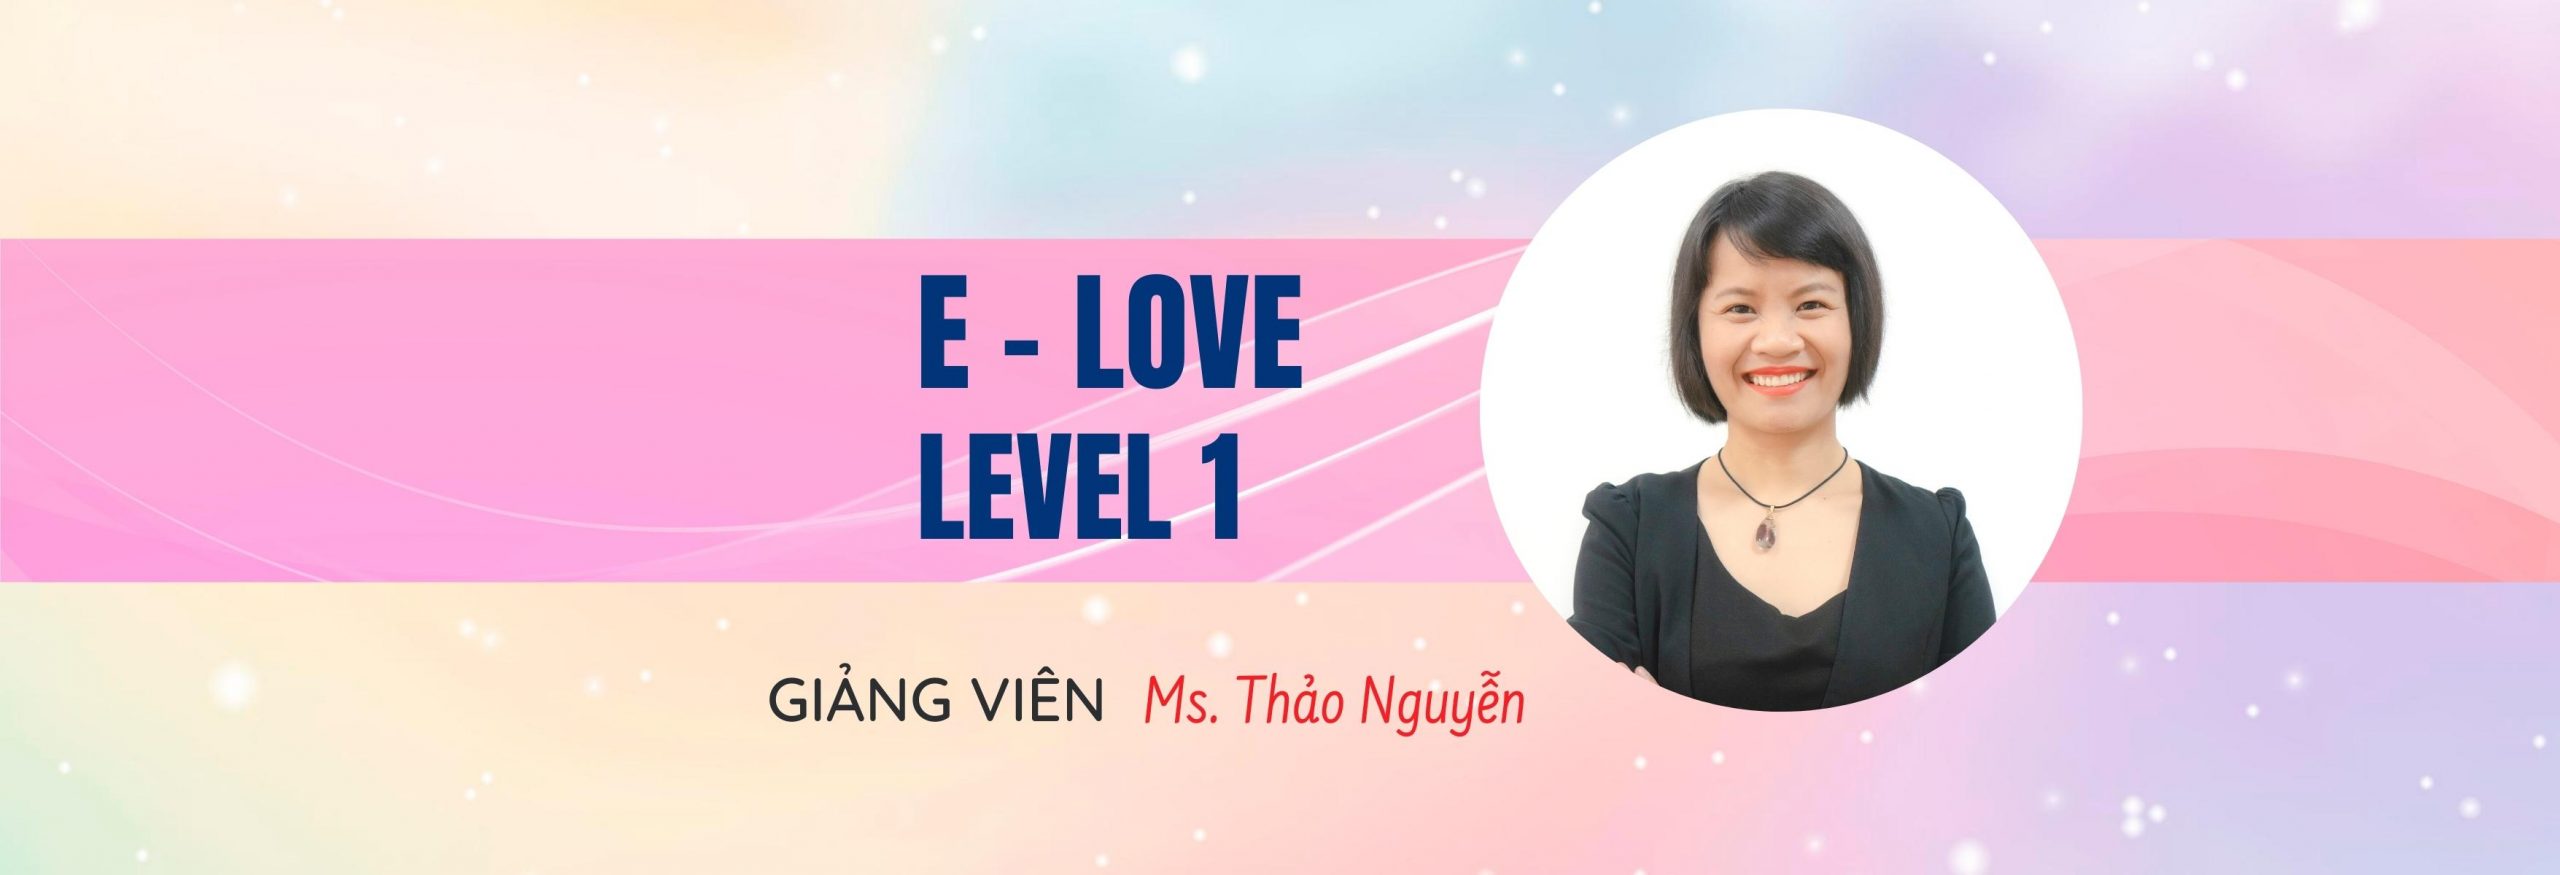 e love level 1